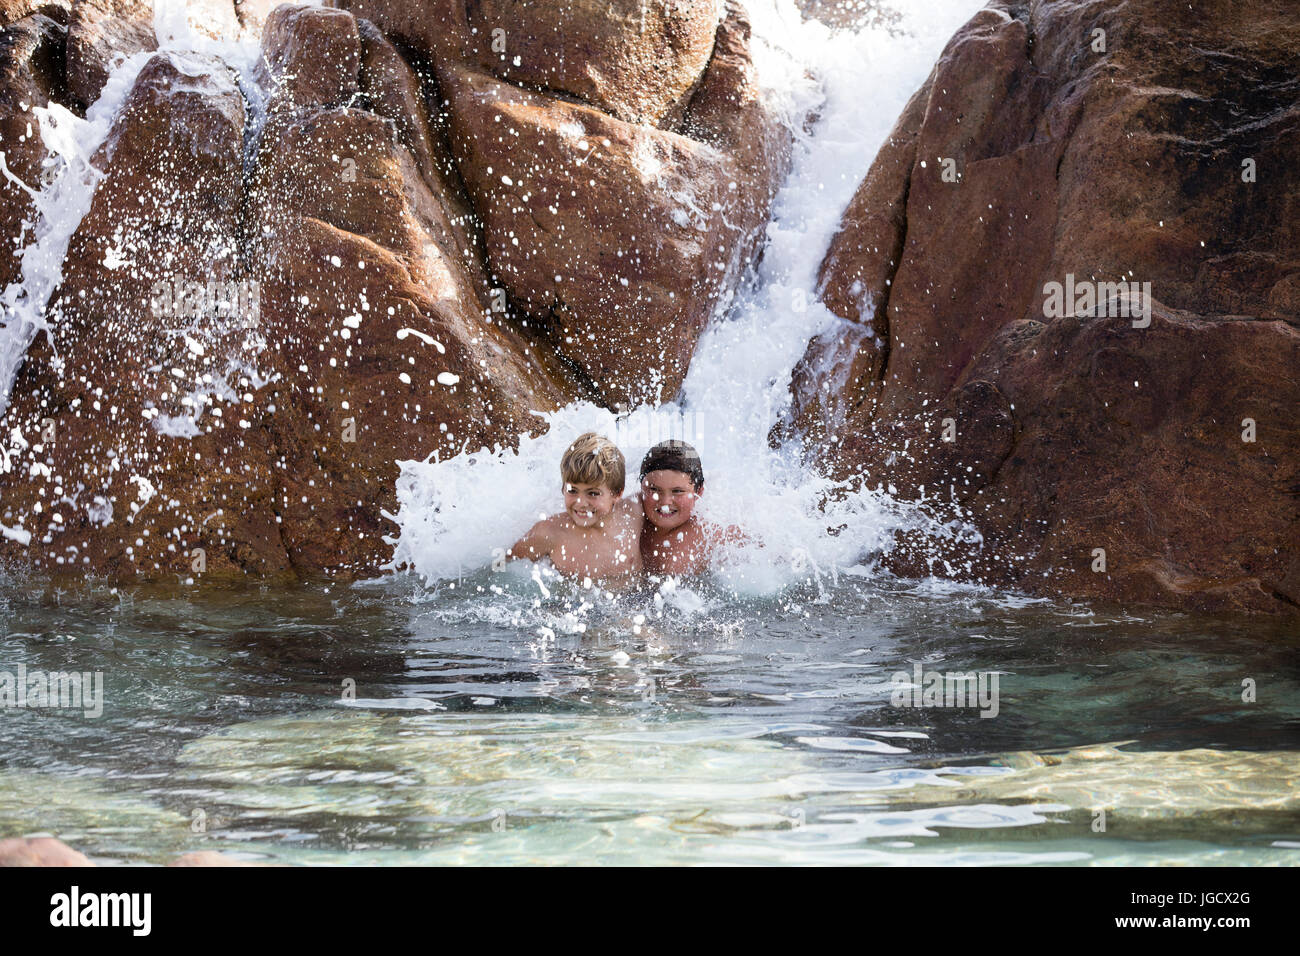 Deux garçons jouant dans une cascade, Western Australia, Australia Banque D'Images